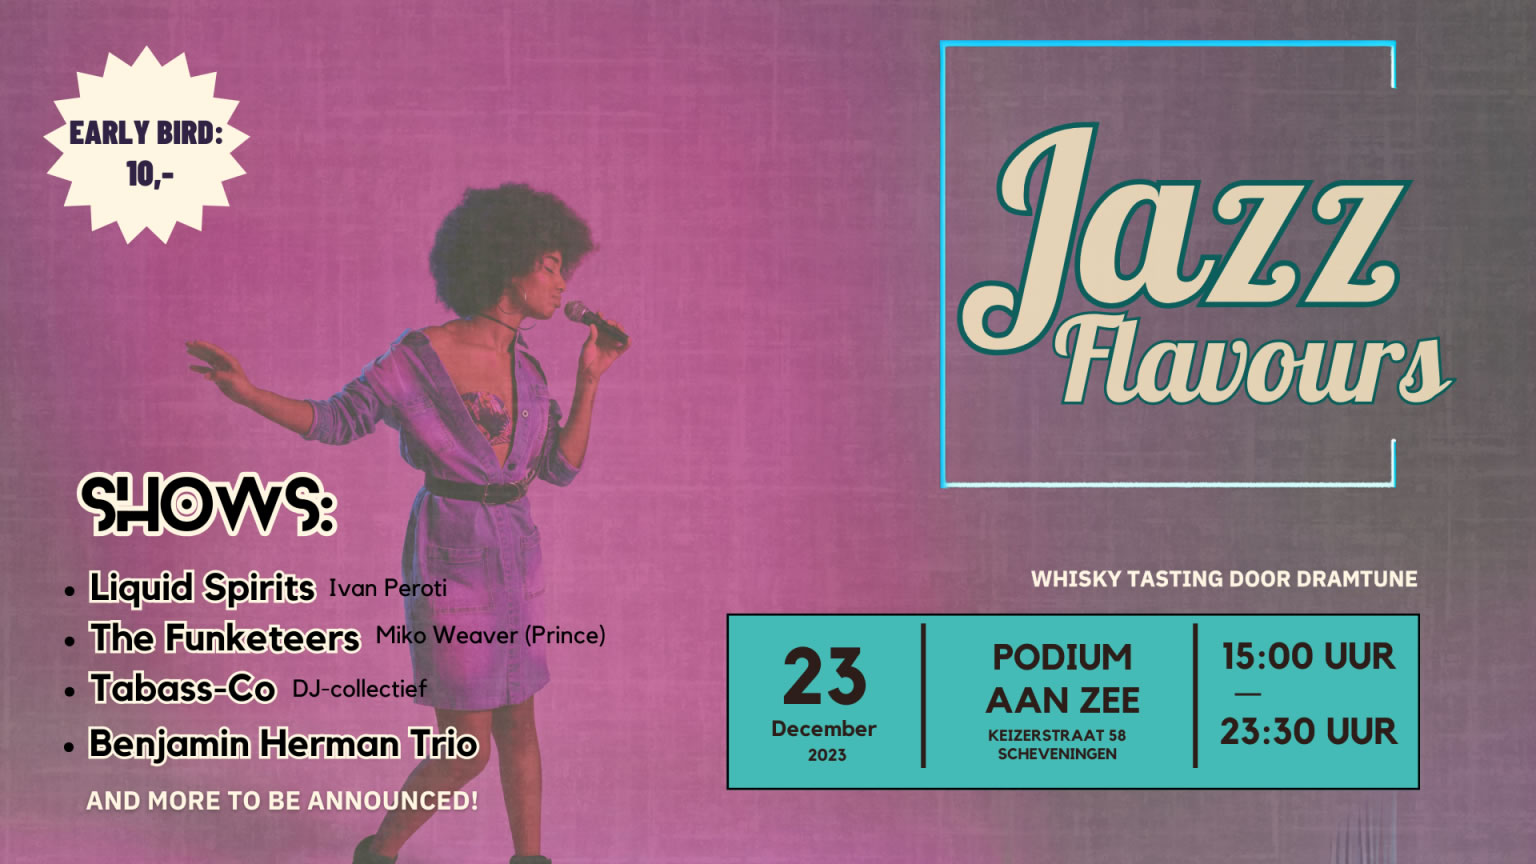 2023-12-23 @ Podium Aan Zee | Jazz Flavours Festival